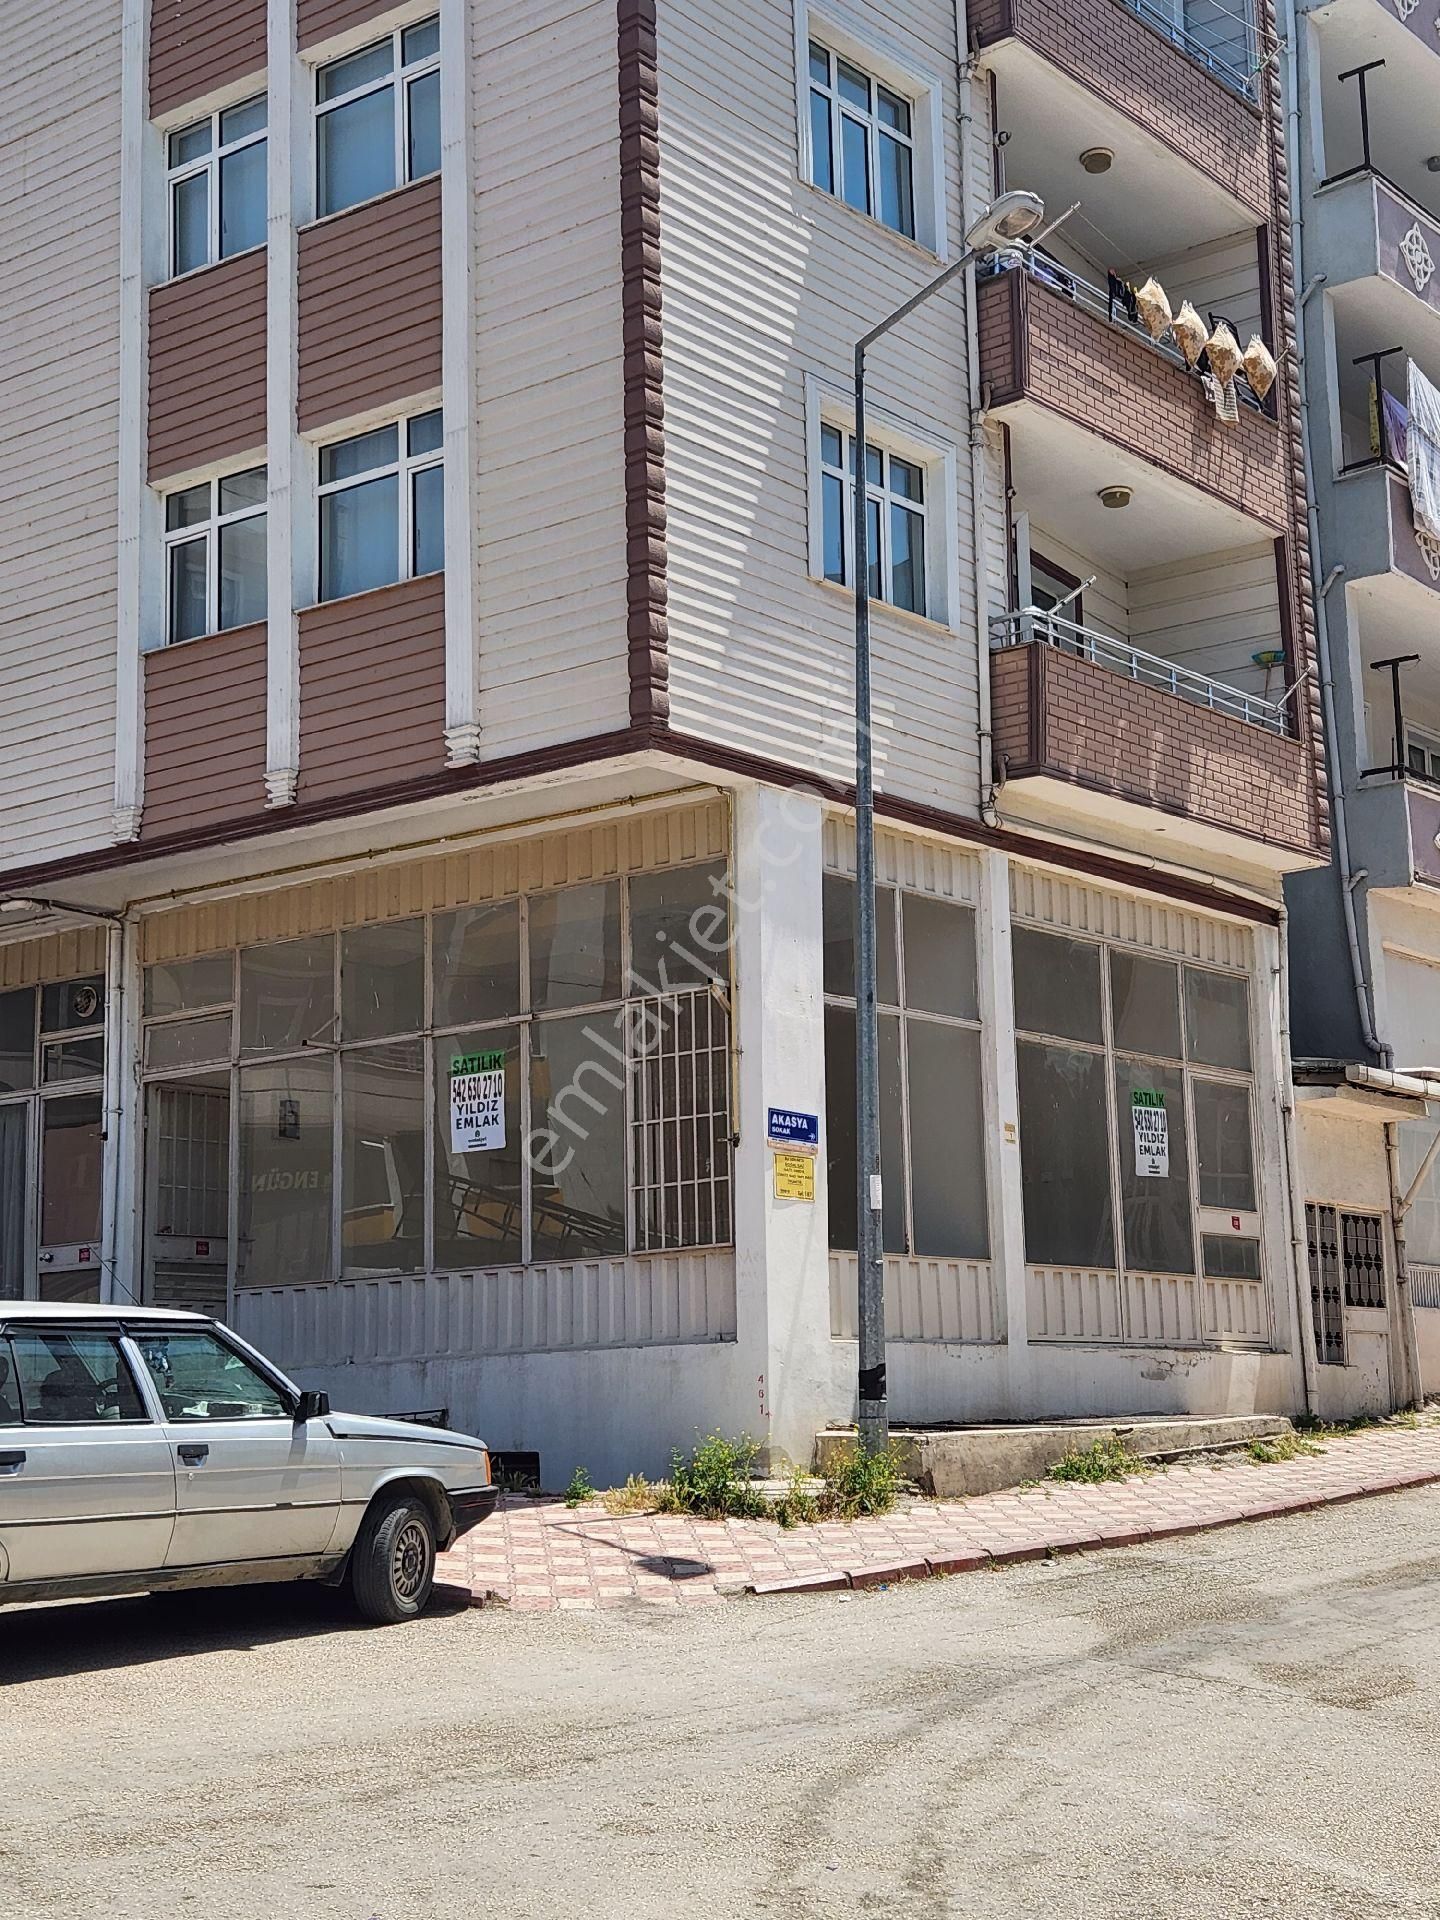 Suluova Orta Satılık Dükkan & Mağaza Yıldız Emlak tan Orta Mahalle orta Cami karşısı köşe dükkan